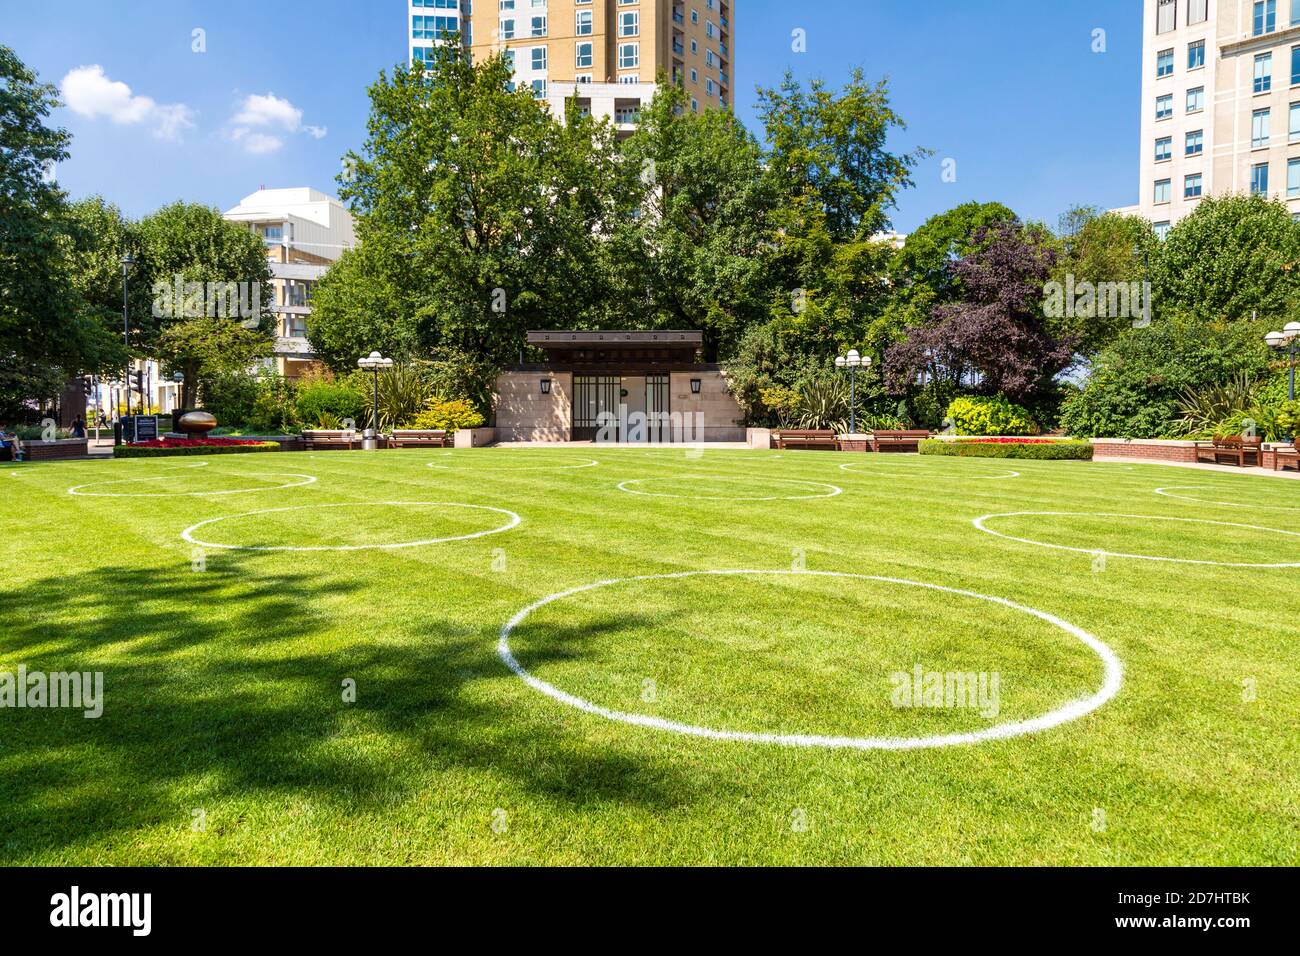 11 août 2020, Londres, Royaume-Uni - des cercles dessinés sur l'herbe à Westferry Circus, Canary Wharf pour indiquer des espaces de distanciation sociale pendant la pandémie du coronavirus Banque D'Images